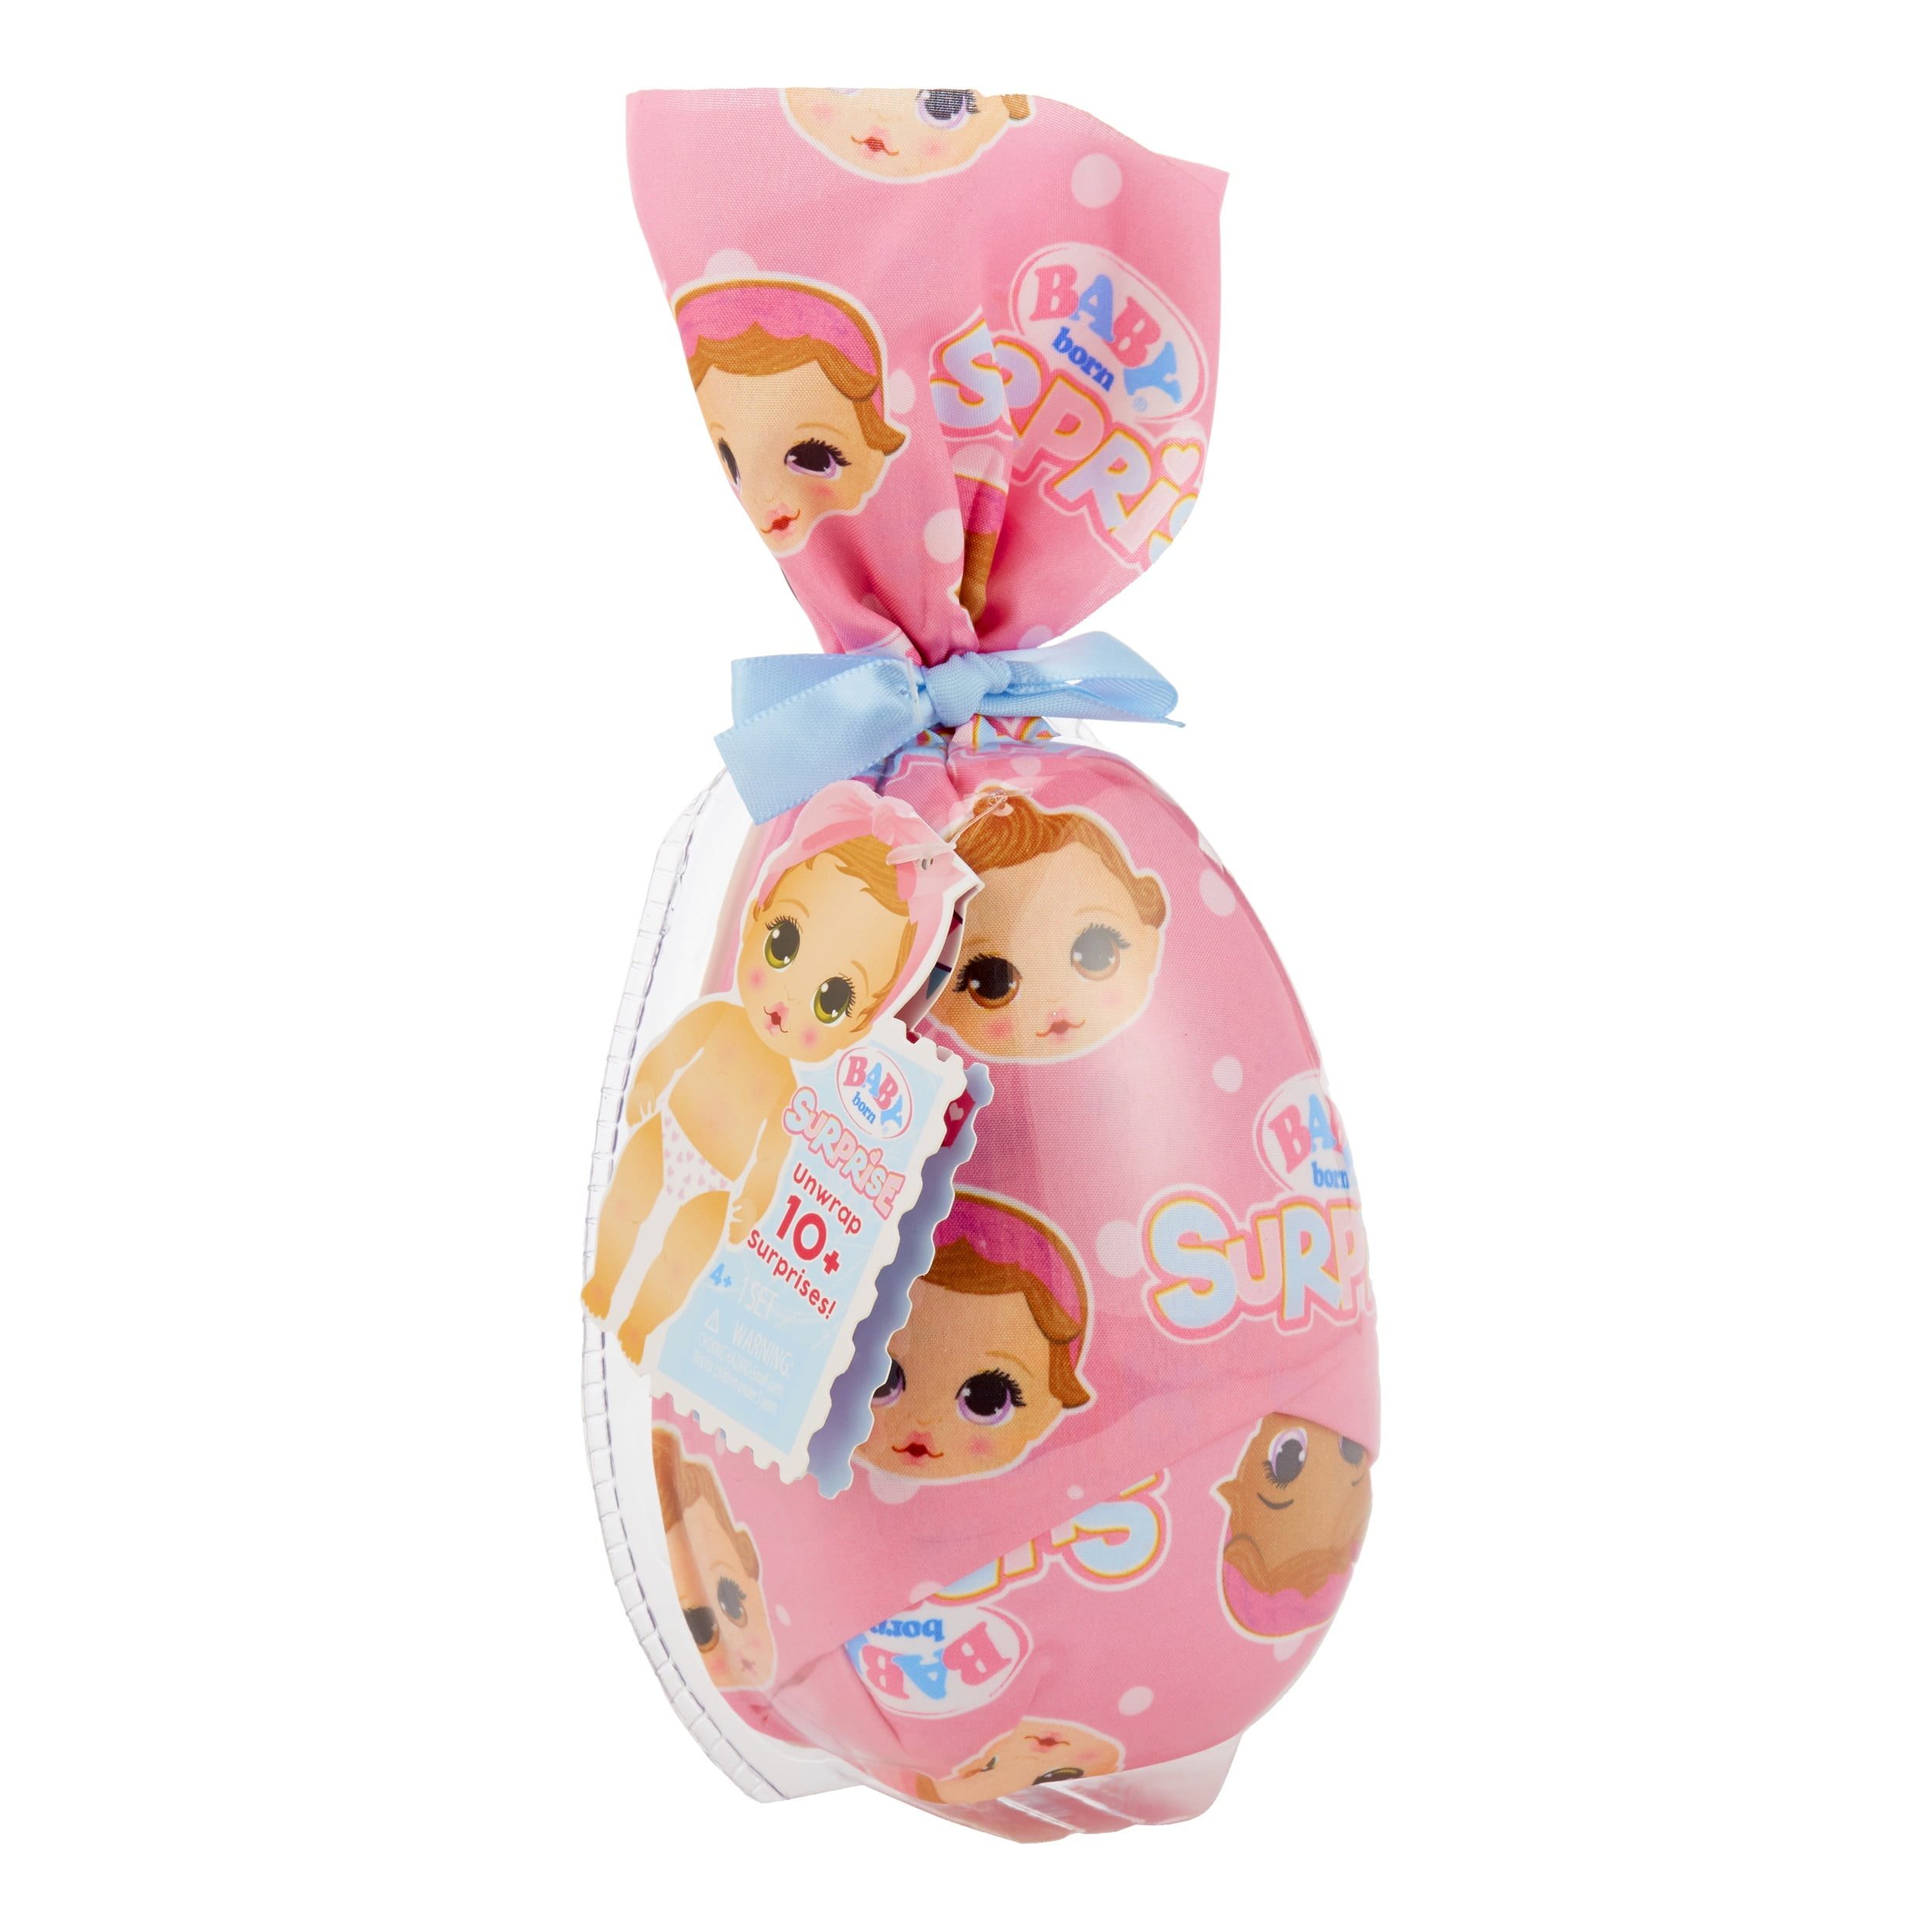 Baby Born Surprise Small Dolls 4 Series 6 - Unwrap Surprises; Collectible  Baby Dolls; Color Change Diaper, 10+ Surprises, Ages 3+, Multicolor